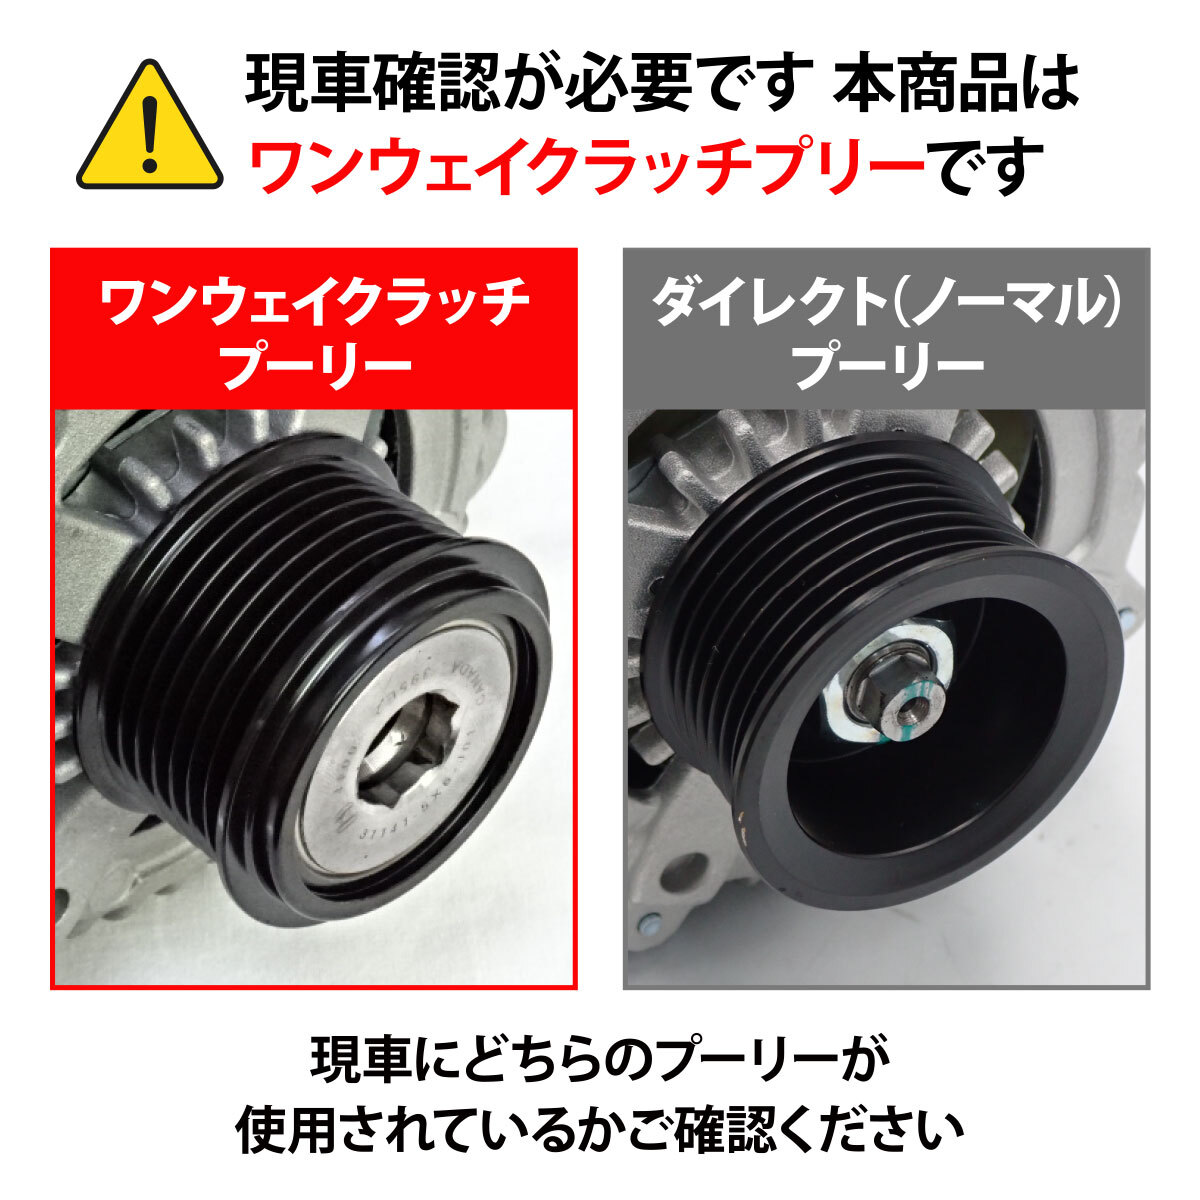  новый товар Toyota Toyoace KDY280 KDY281 генератор переменного тока Dynamo One Way сцепление шкив 27060-30100 core возврат не необходимо 